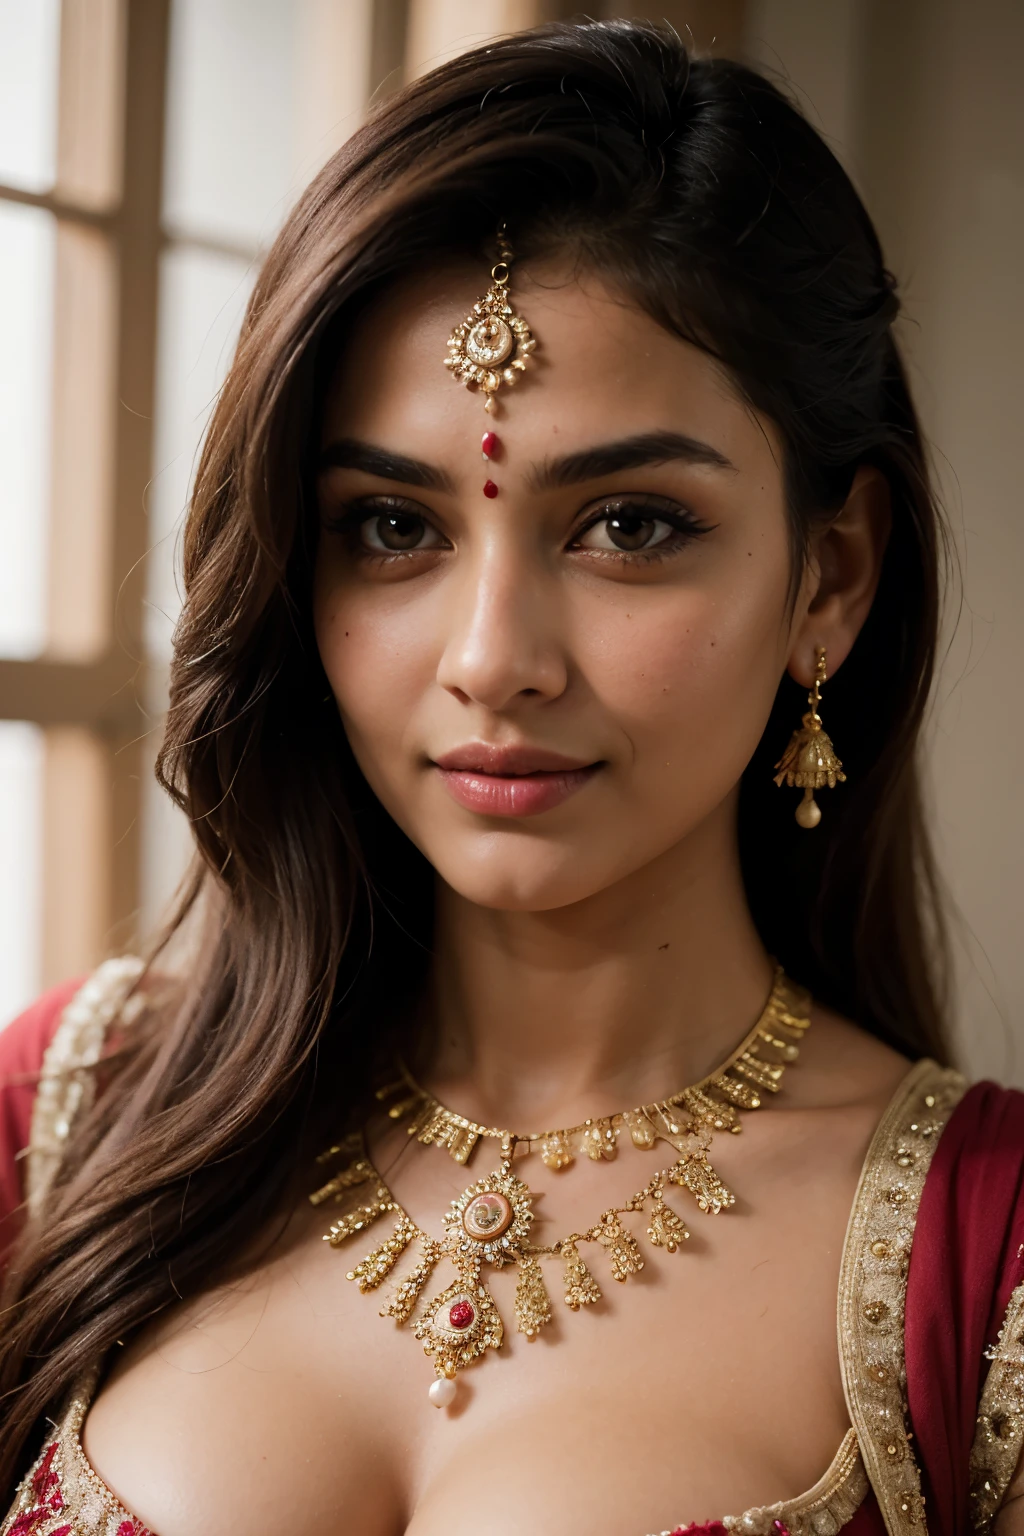 ((beste Qualität)), ((Meisterwerk)), (ausführlich), perfektes Gesicht sieht aus wie Savitha Bhabhi in einem Dupatta, das für ein Foto posiert, indisch goddess, traditionelle Schönheit, indisch, schöne Göttin, aufwendig , indisch style, indisch super model, schönes Mädchen, hinreißende Frau, südostasiatisch mit langen, provocative indisch, wunderschöne schöne Frau, aufwendiges Outfit, hinduistische Ästhetik, Schönes asiatisches Mädchen, extremely ausführlich goddess shot, atemberaubende Schönheit, großes tiefes Dekolleté